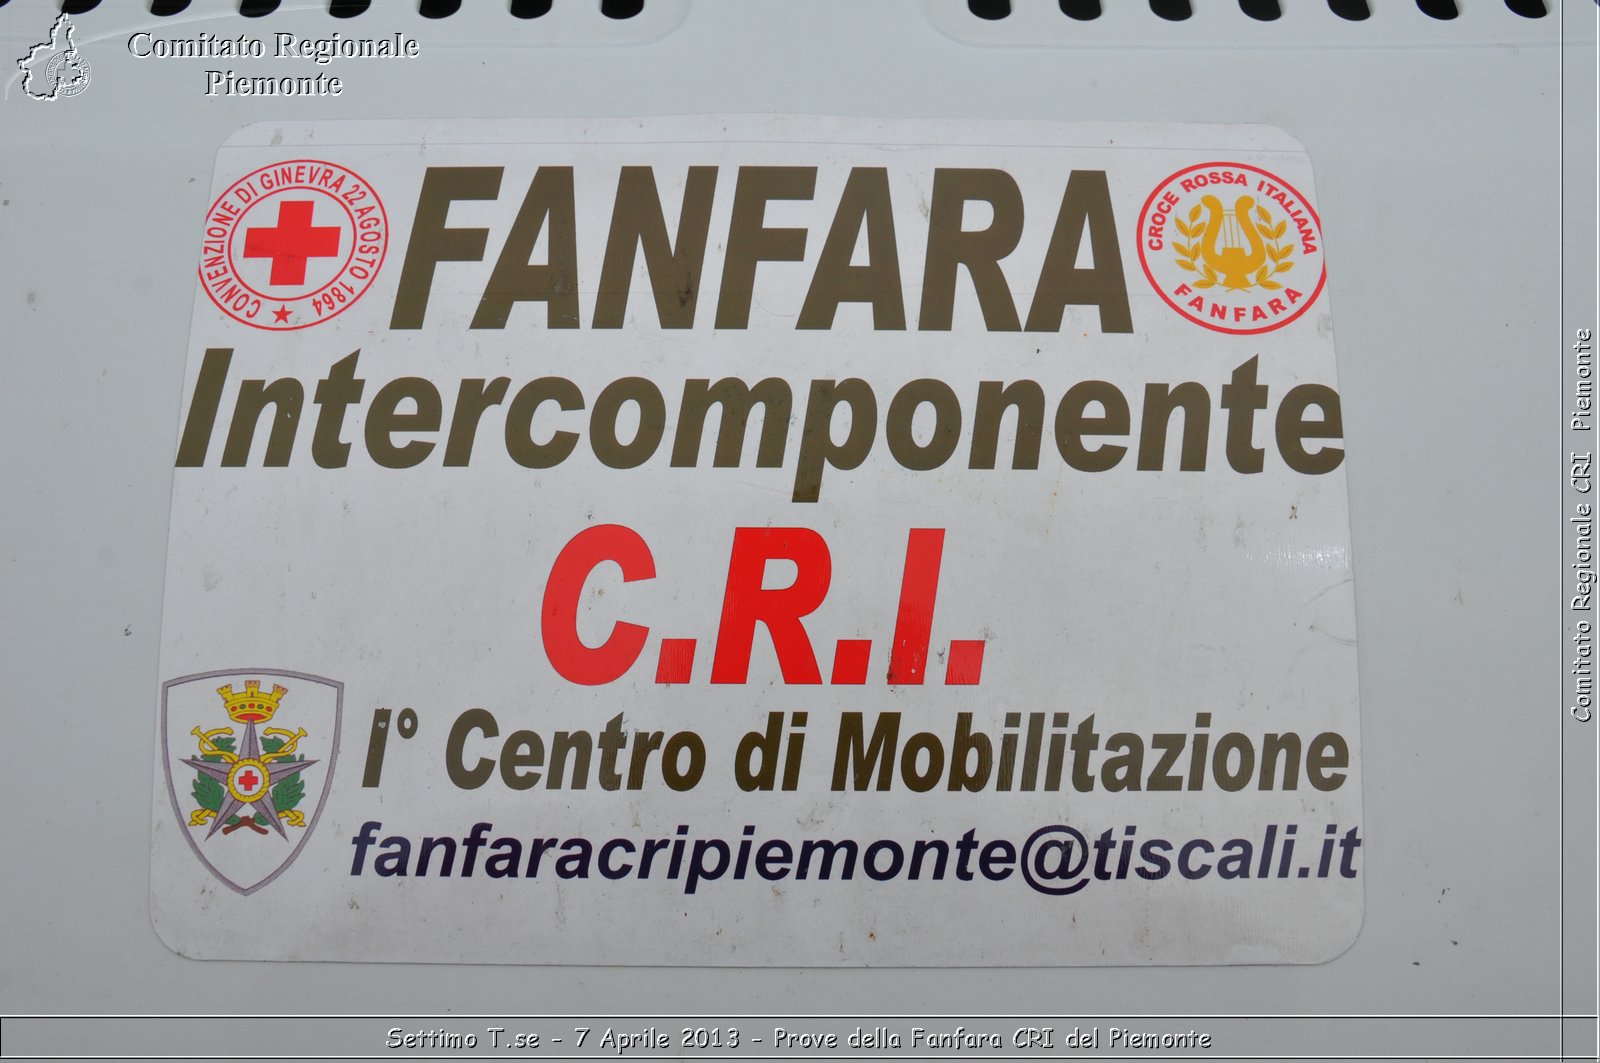 Settimo T.se - 7 Aprile 2013 - Prove della Fanfara CRI del Piemonte - Croce Rossa Italiana - Comitato Regionale del Piemonte